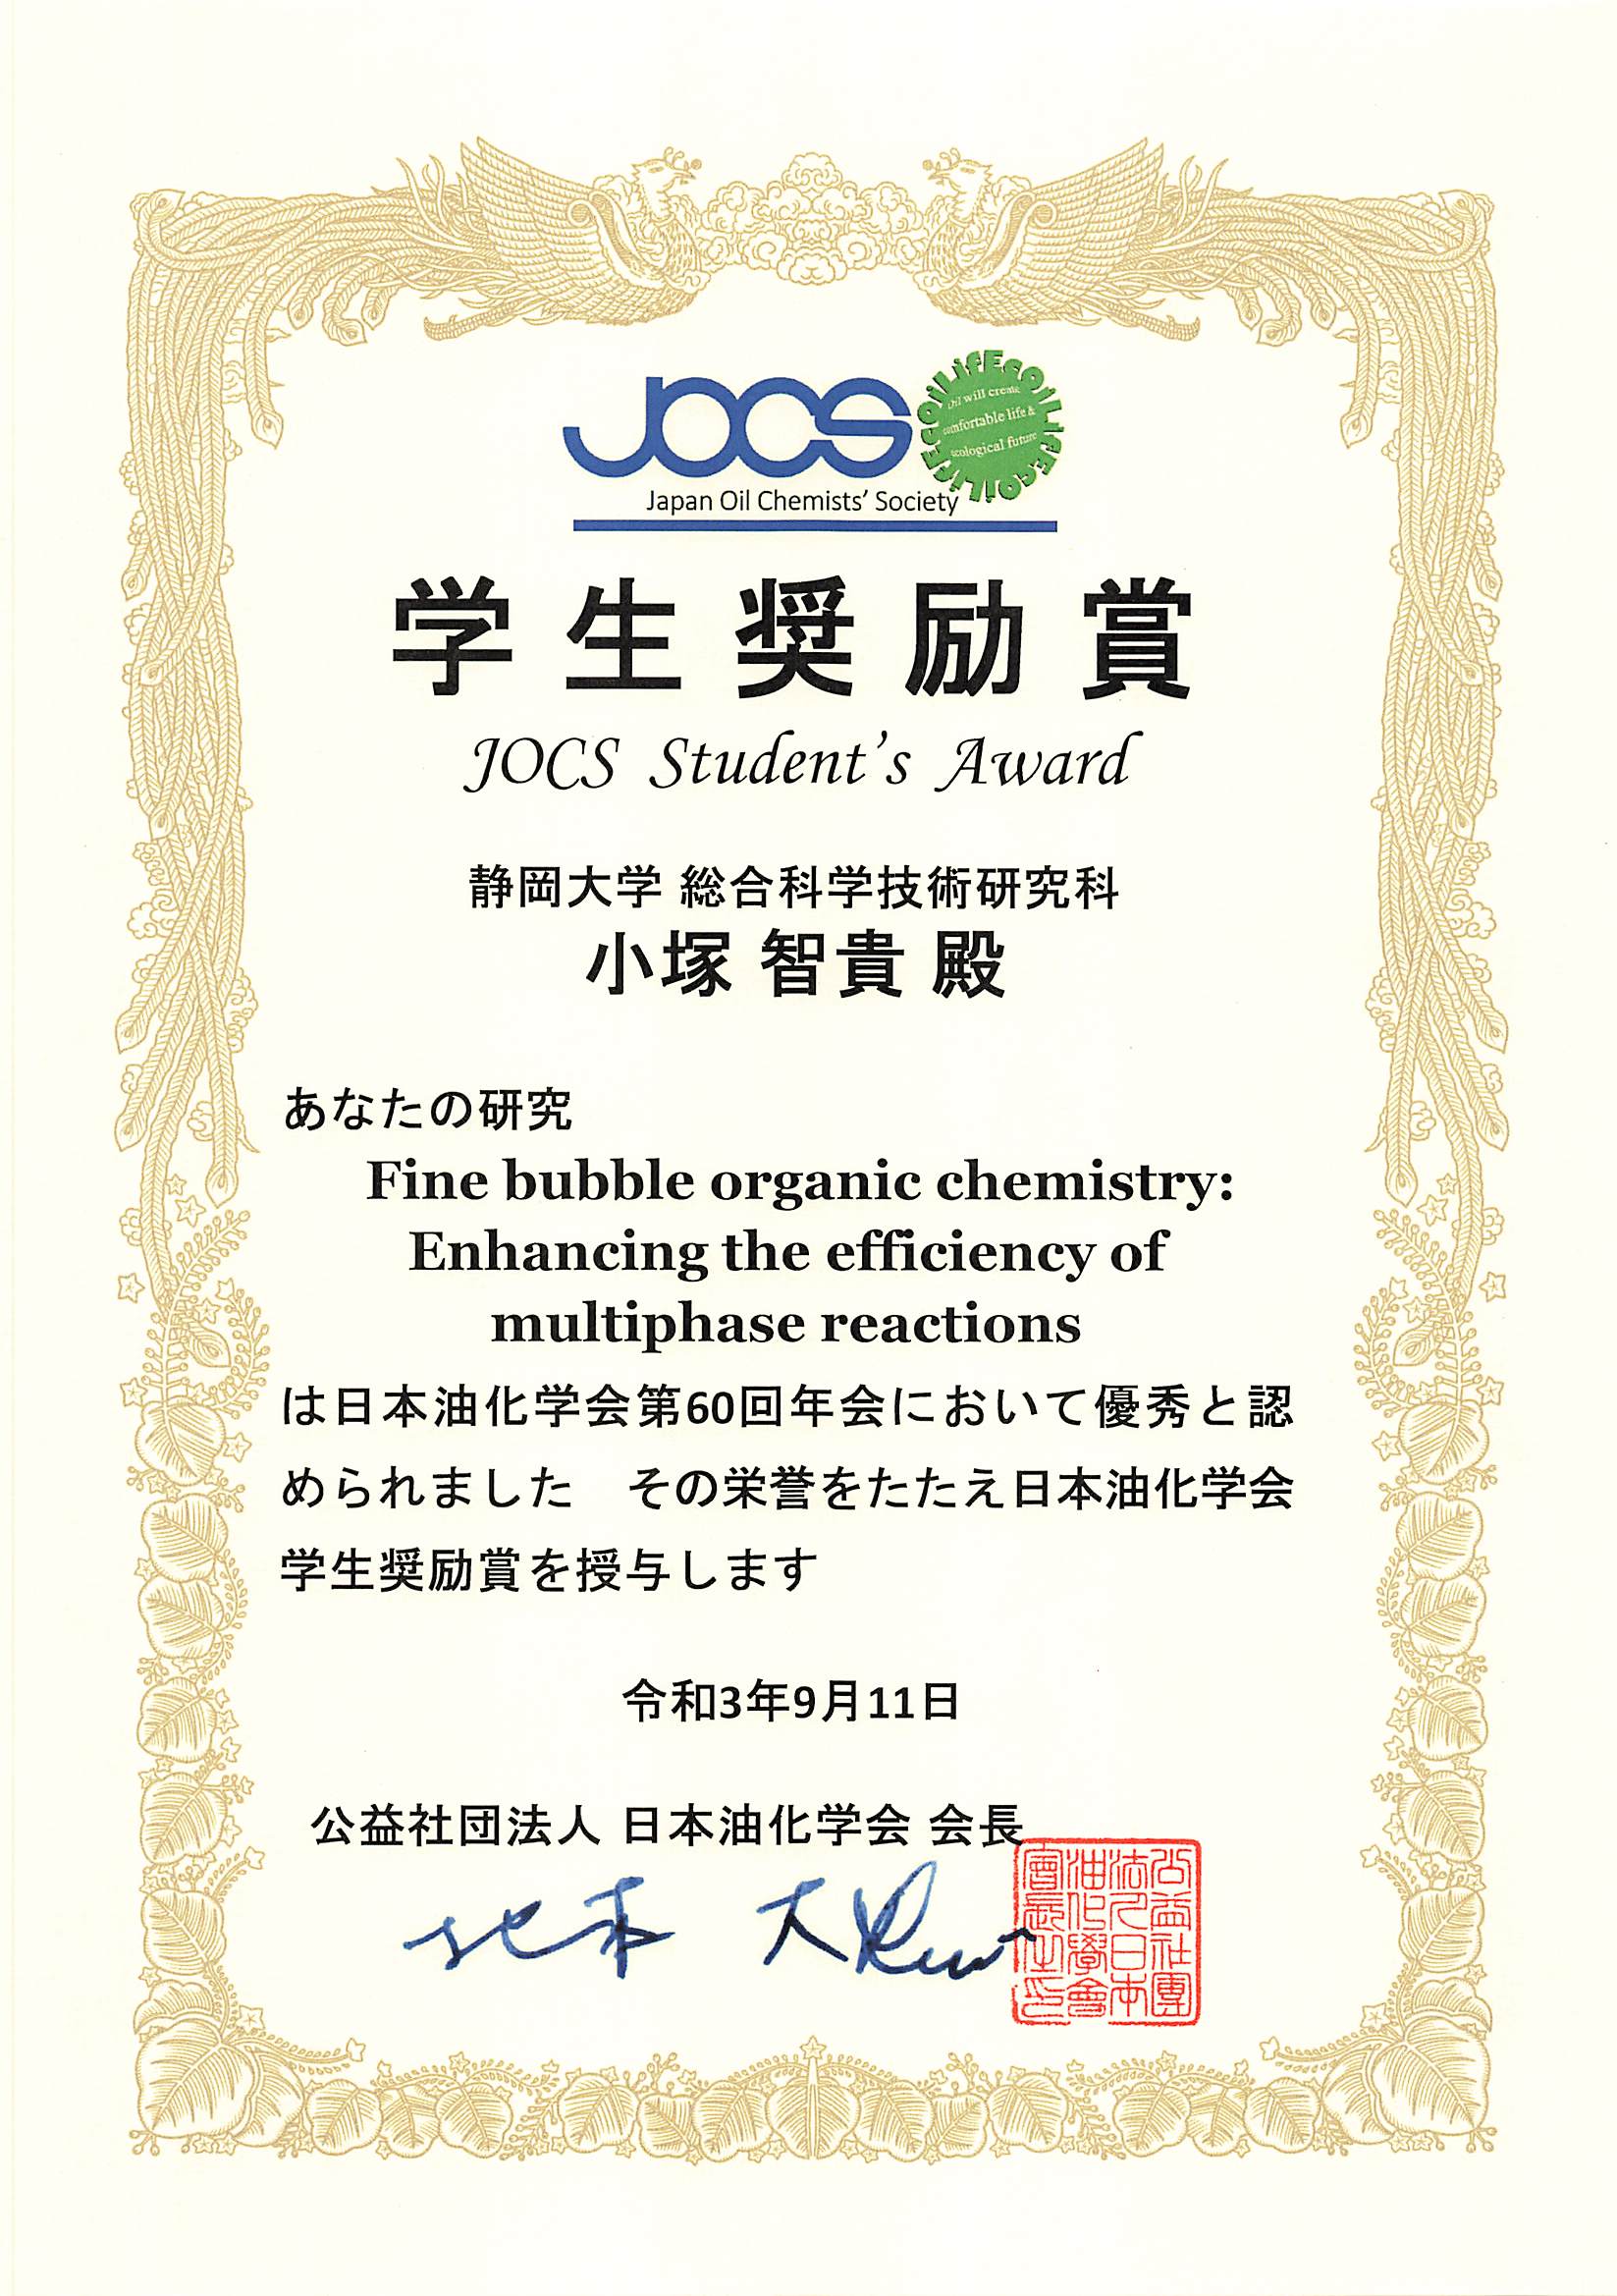 間瀬研究室の学生が日本油化学会 第60回年会 学生奨励賞を受賞しました。